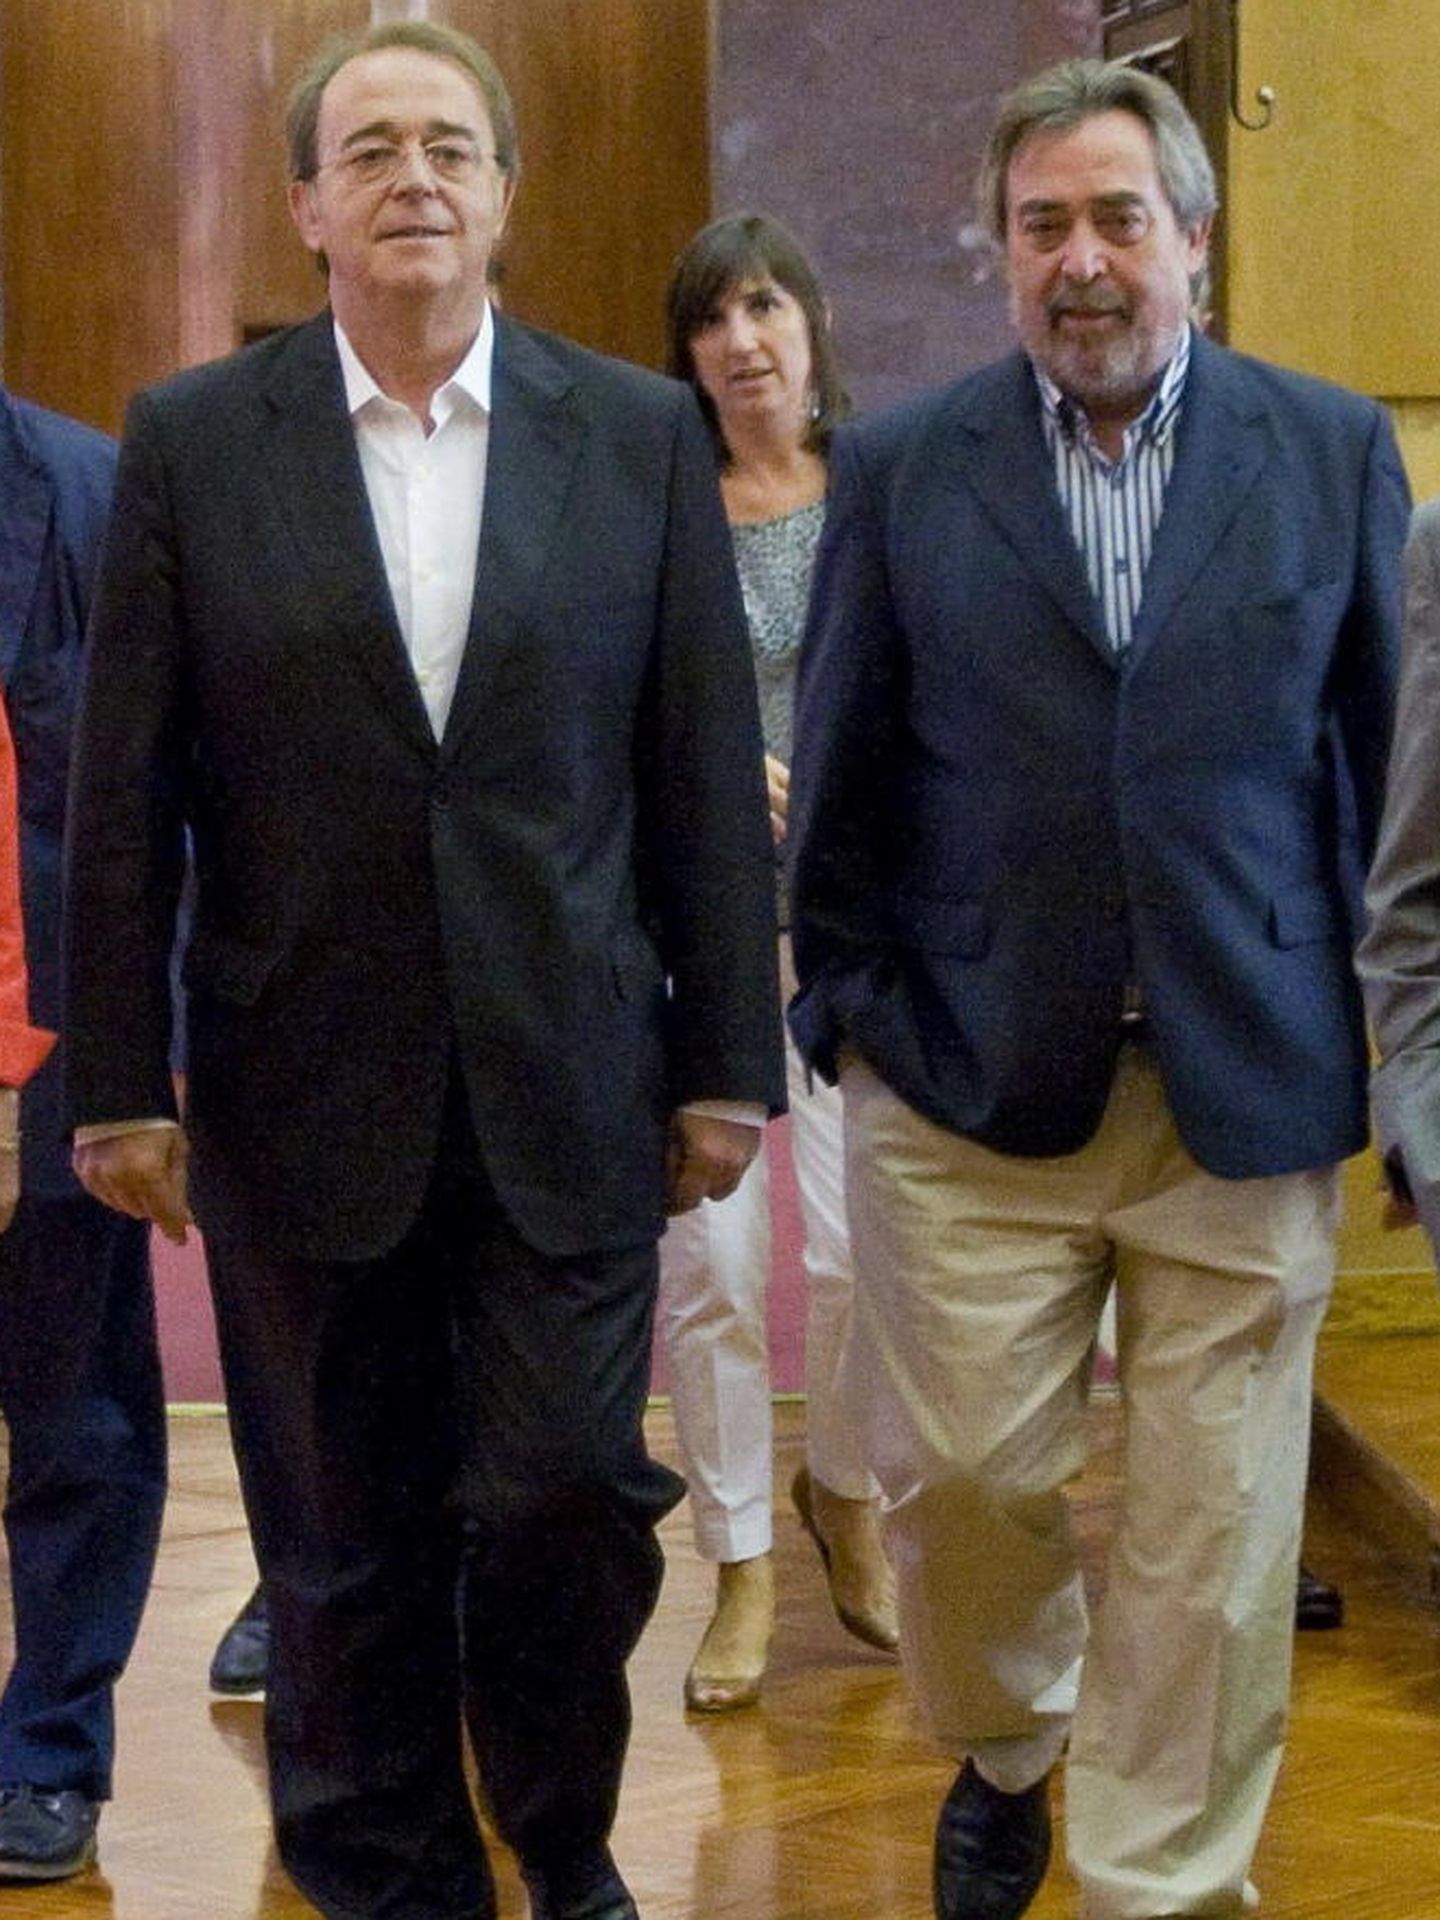 Carmen Dueso, exconcejala en el Ayuntamiento de Zaragoza, en septiembre de 2014 en la capital aragonesa. (EFE)